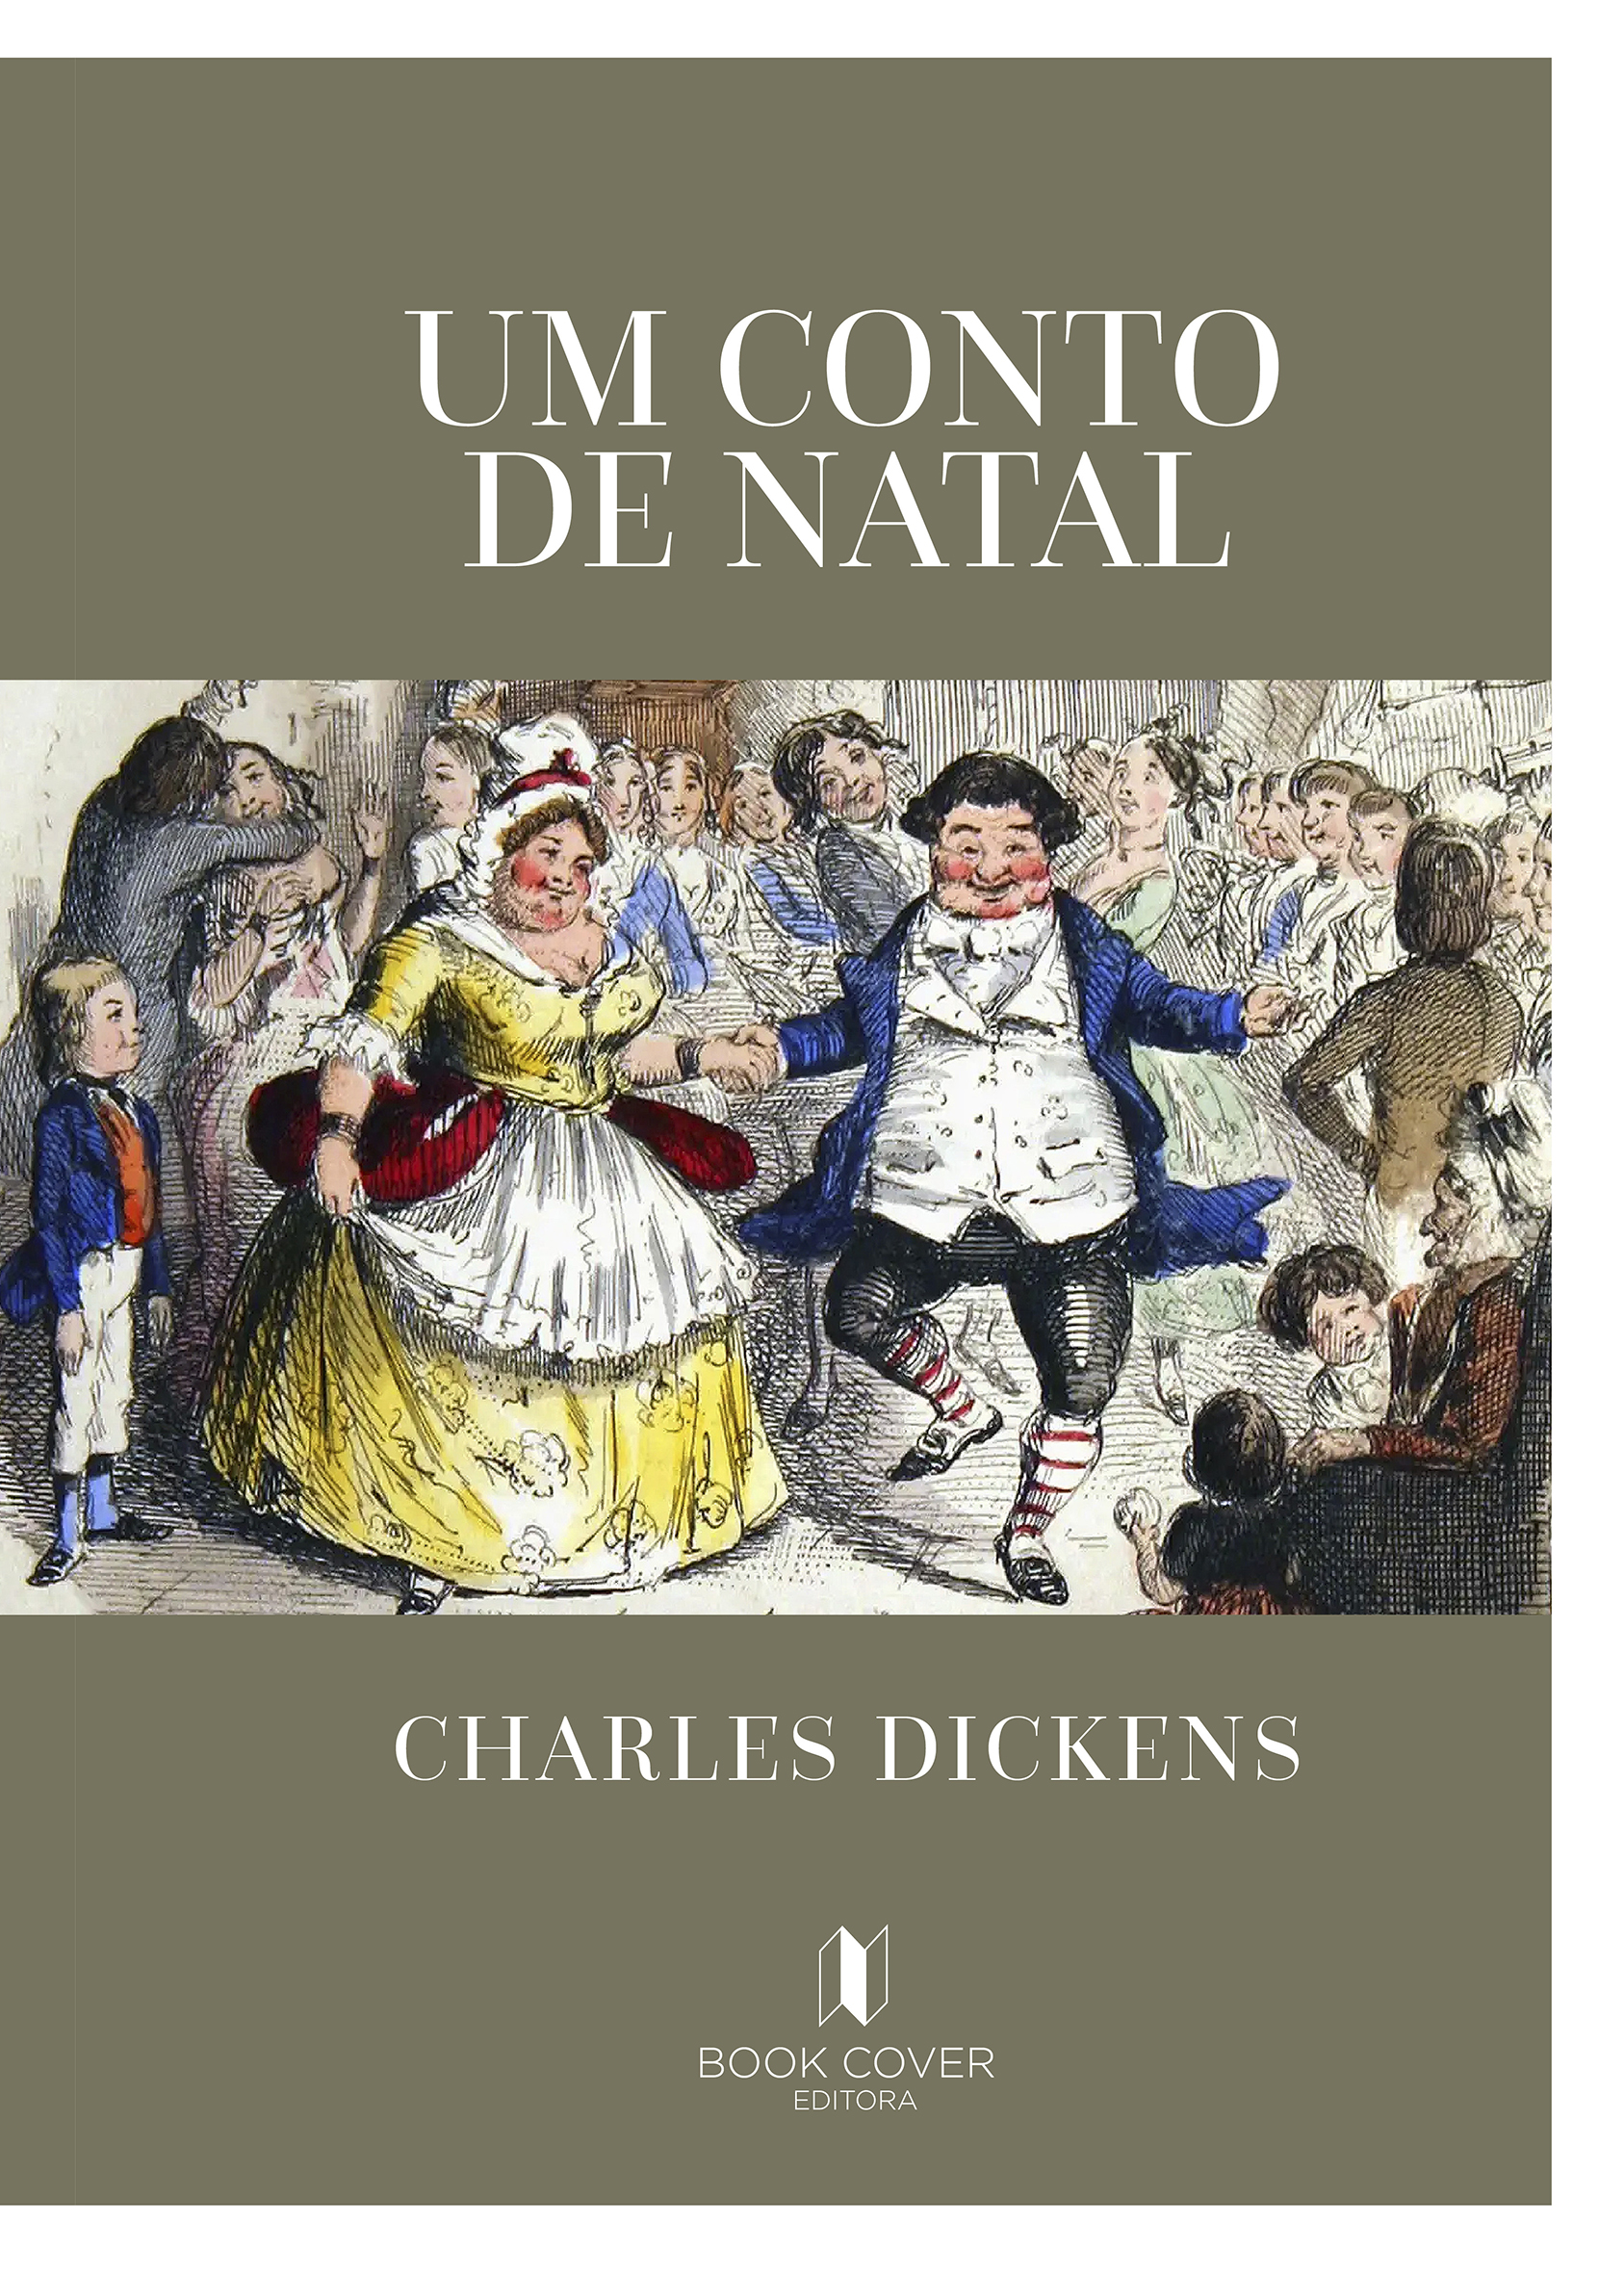 Um conto de Natal de Charles Dickens - Book Cover